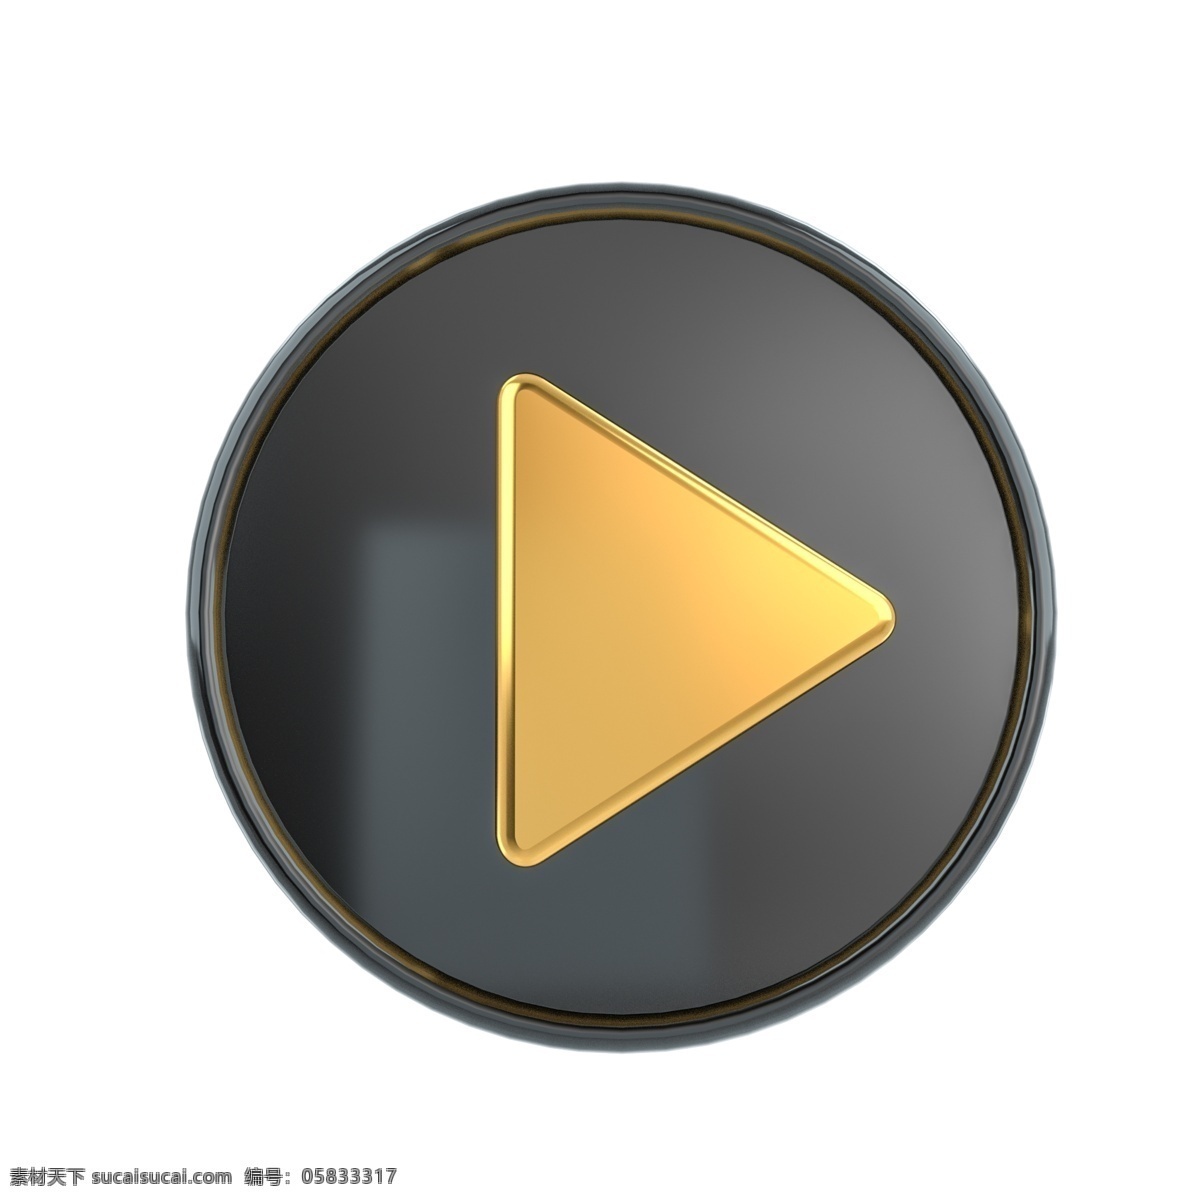 c4d 黑金 立体 播放 按钮 图标 3d 黑金质感 金色 黑色 播放按钮图 视频 常用